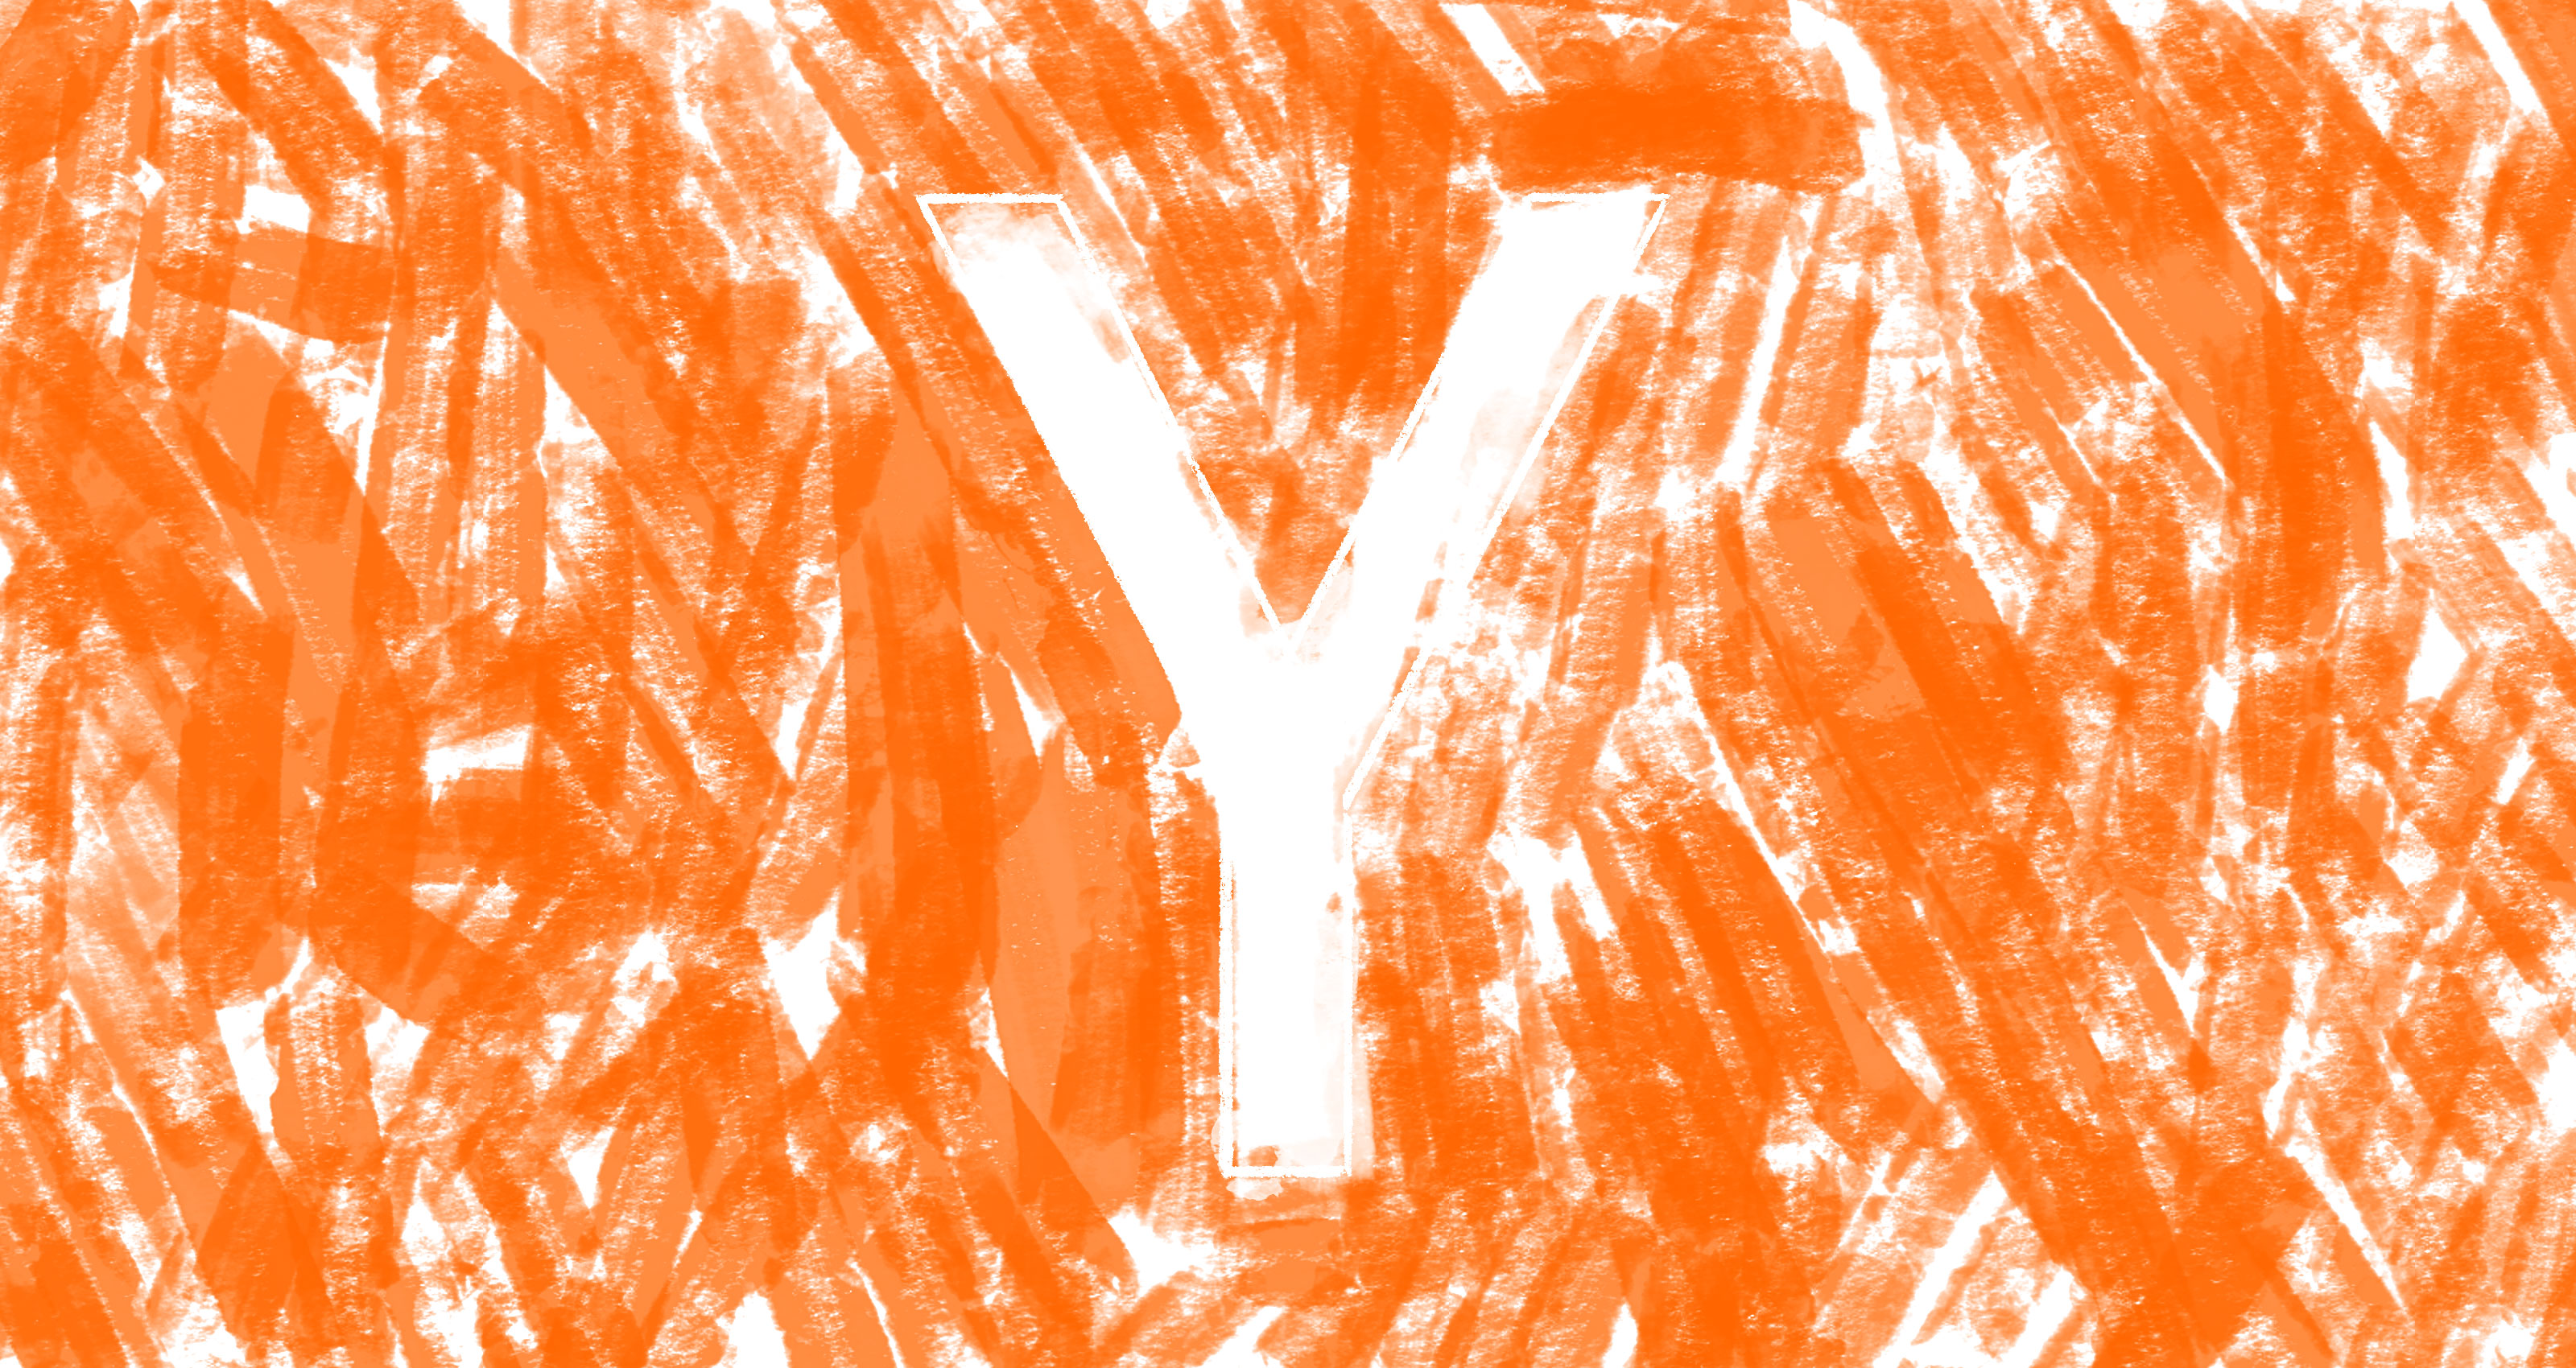 yc logo02